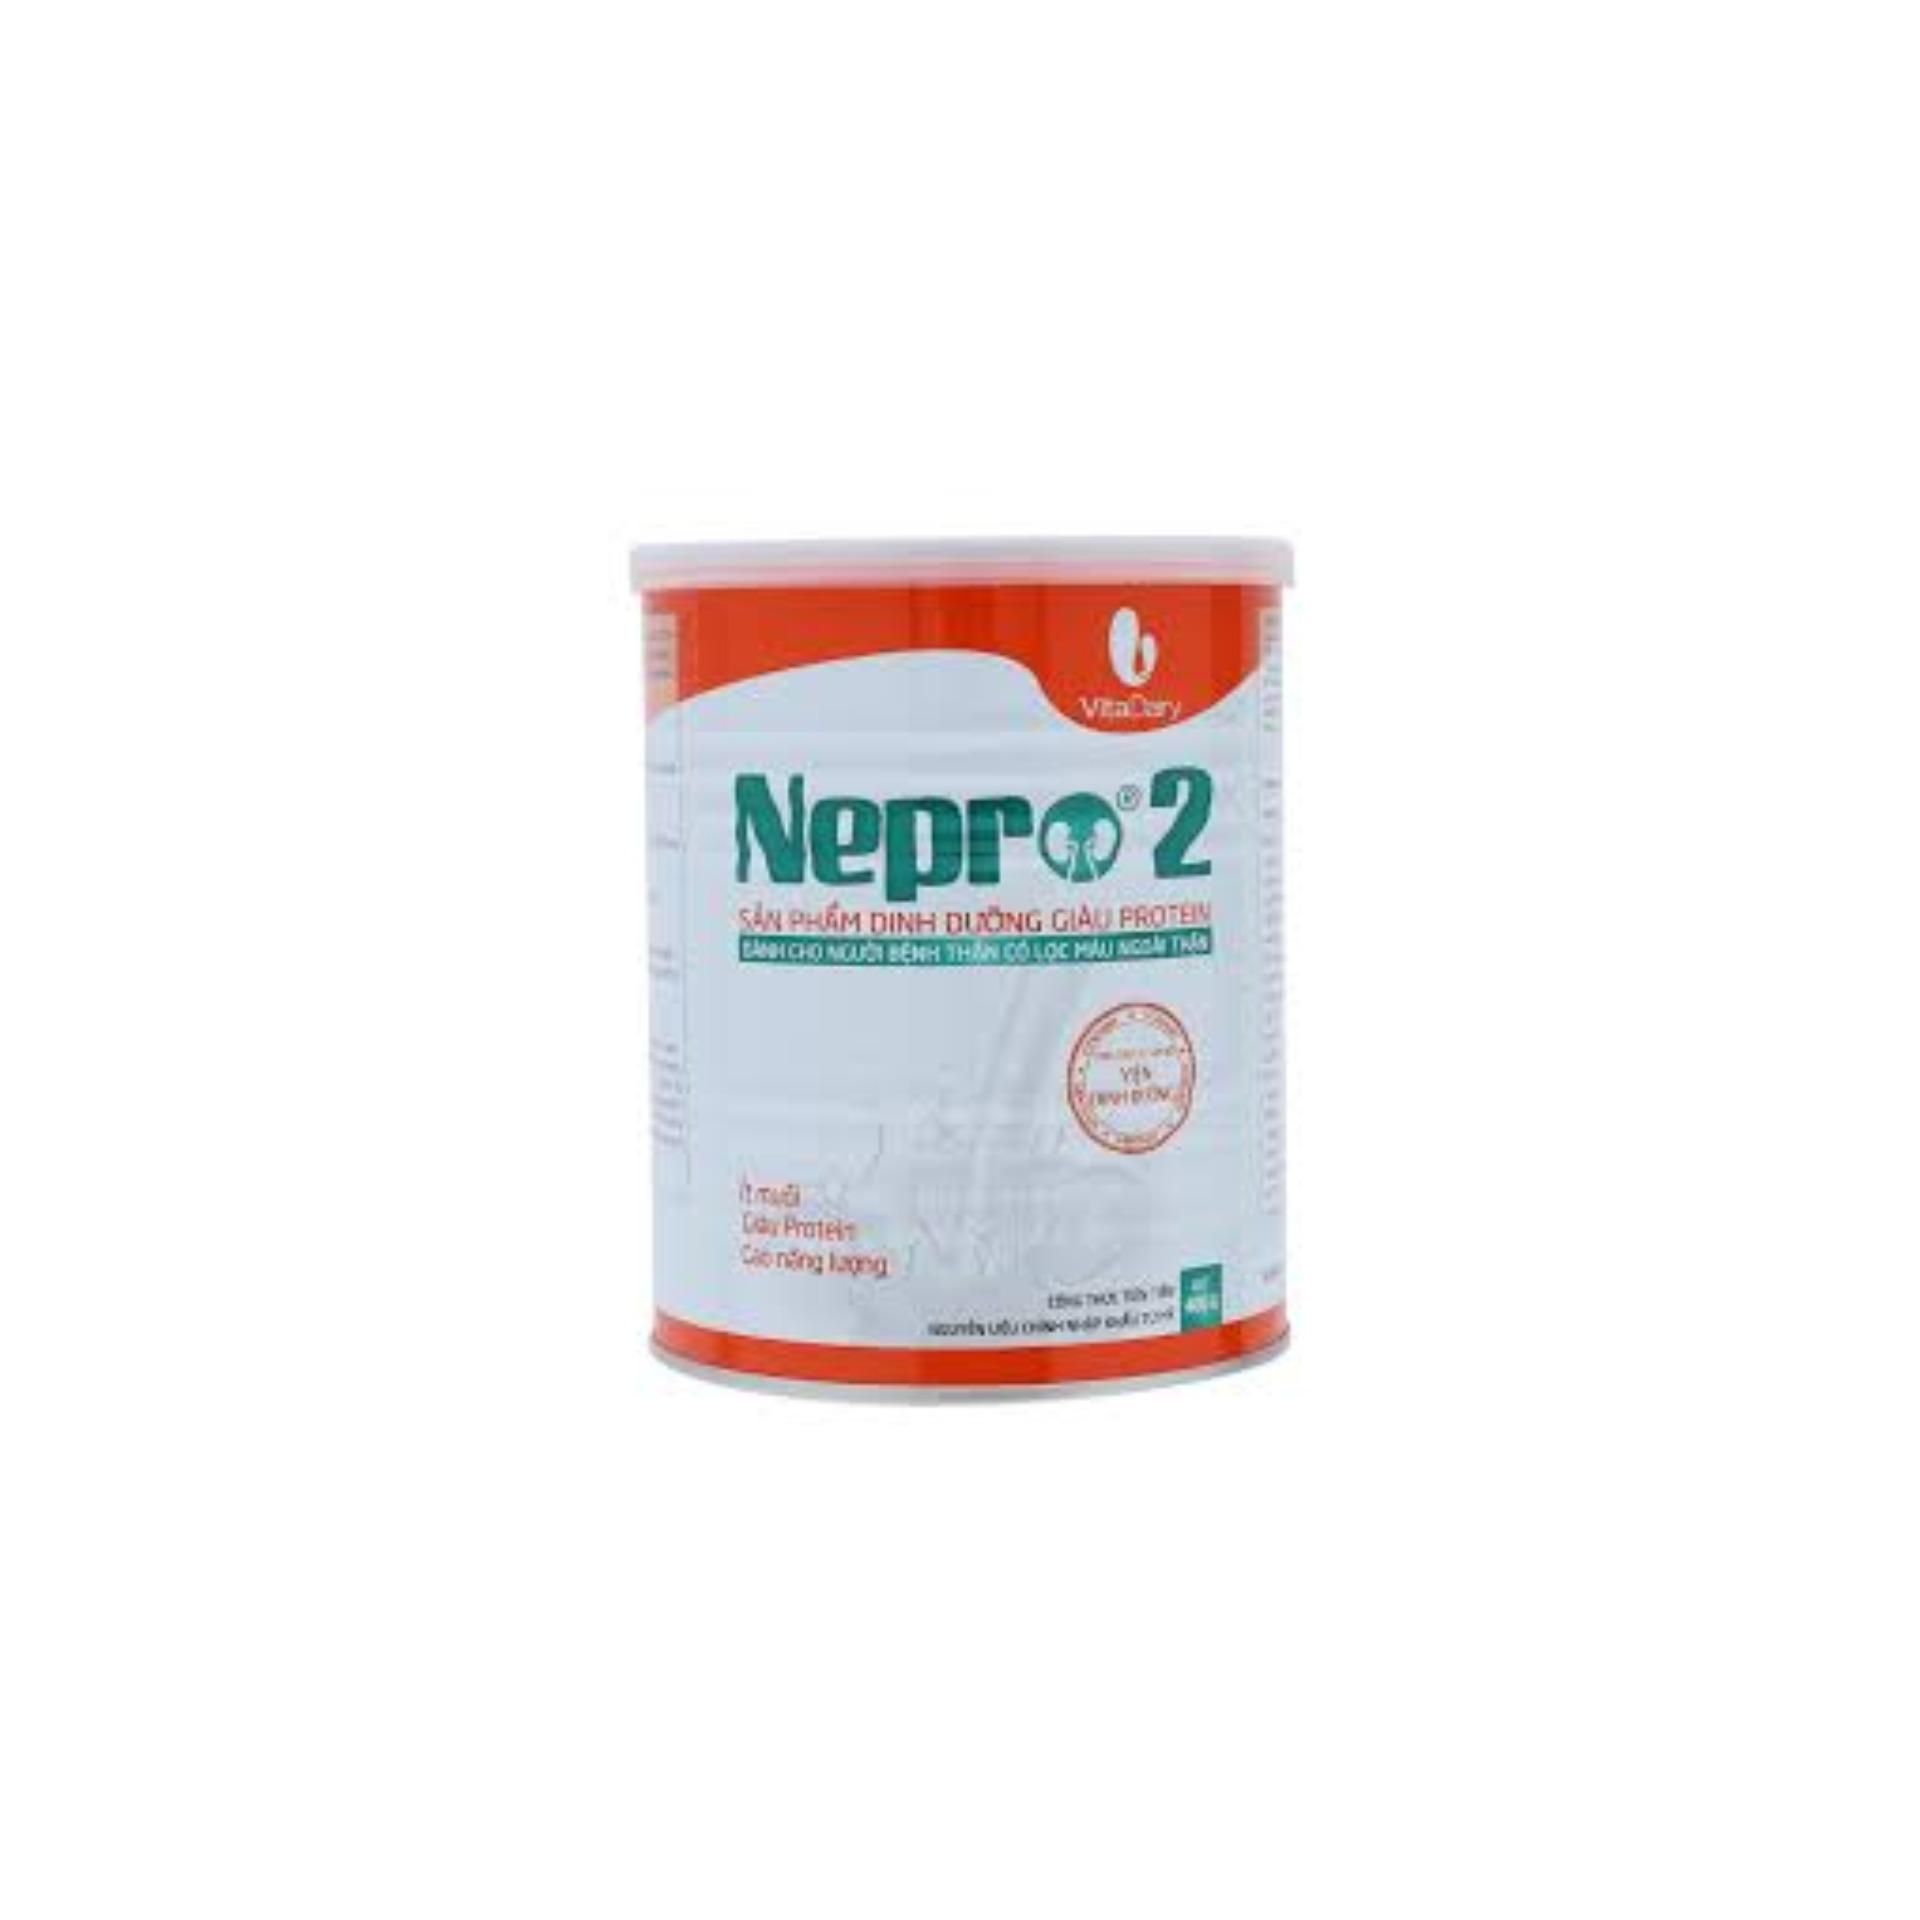 Sữa Nepro 1 - 400g DÀNH CHO NGƯỜI CHƯA CHẠY THẬN